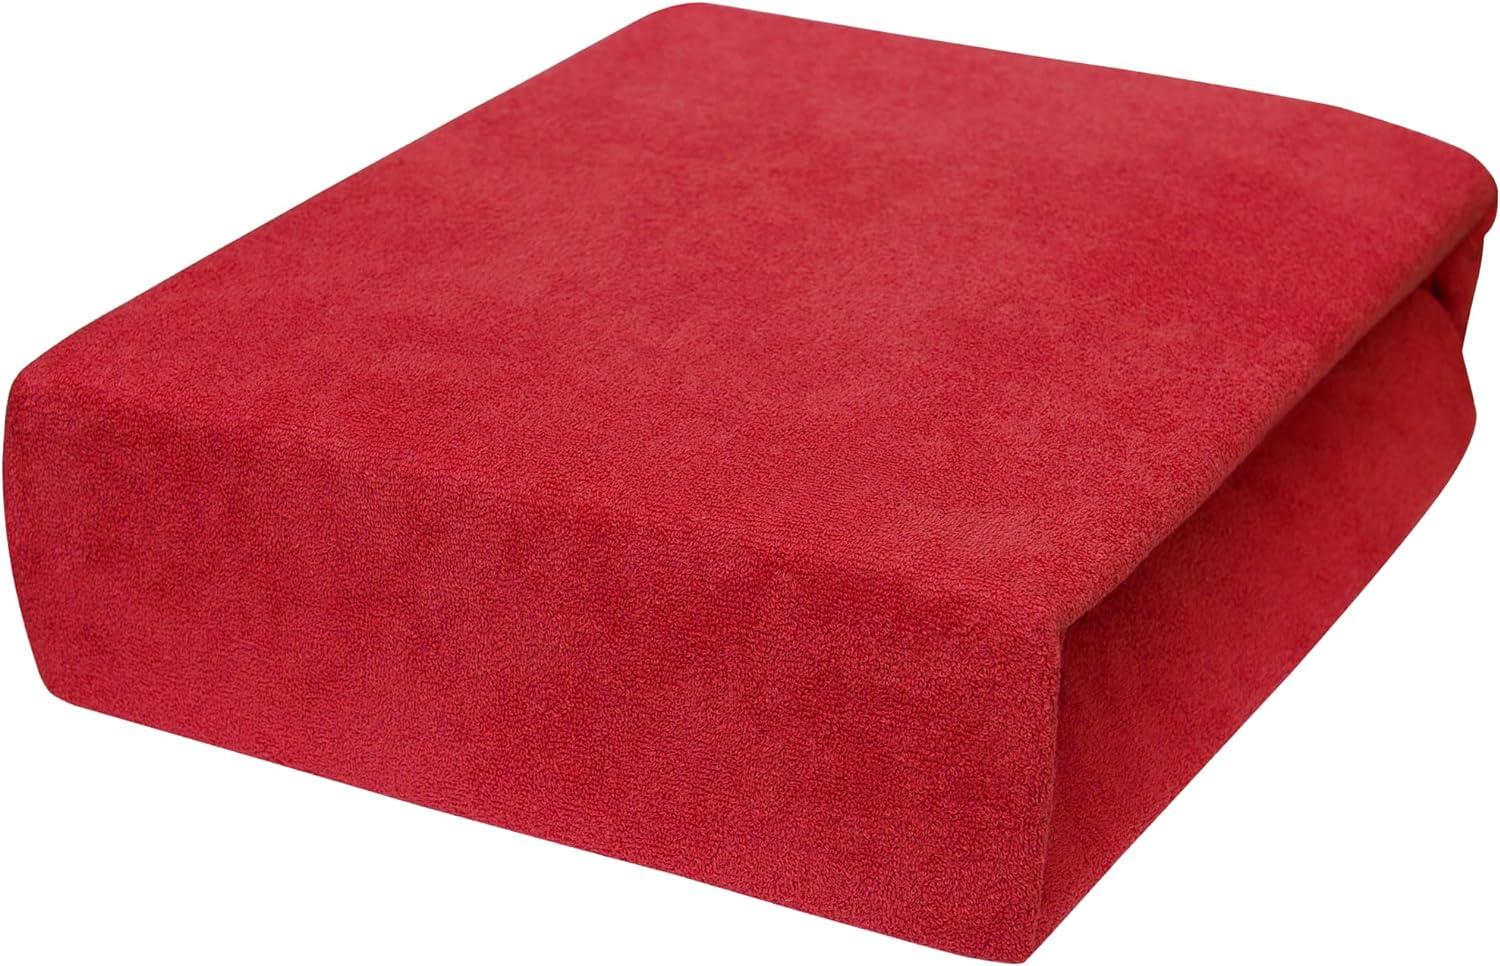 Frottier Spannbetttuch 120x60 cm Passend für Kinderbett Matratze (Rot) Bild 1